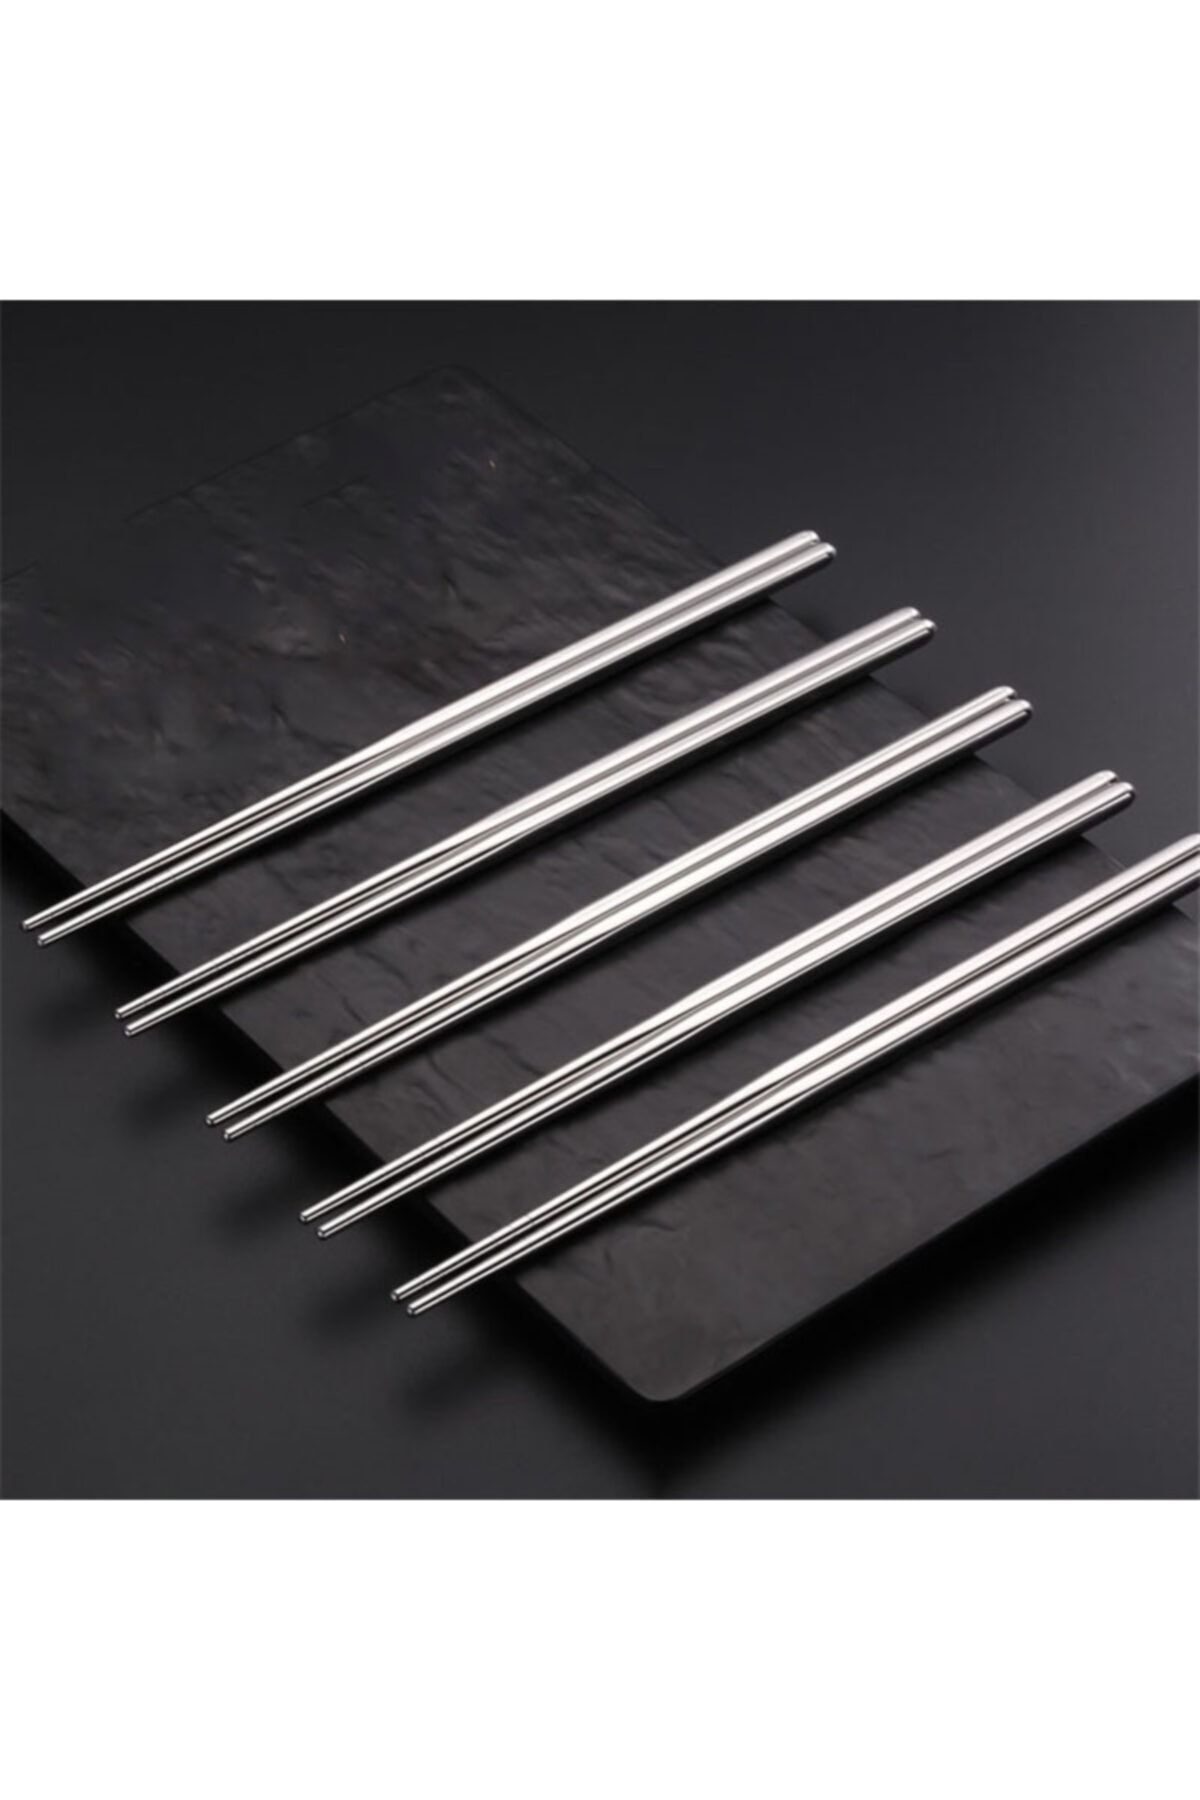 muustie Paslanmaz Çelik Metal 5 Takım Chopstick 22,5cm